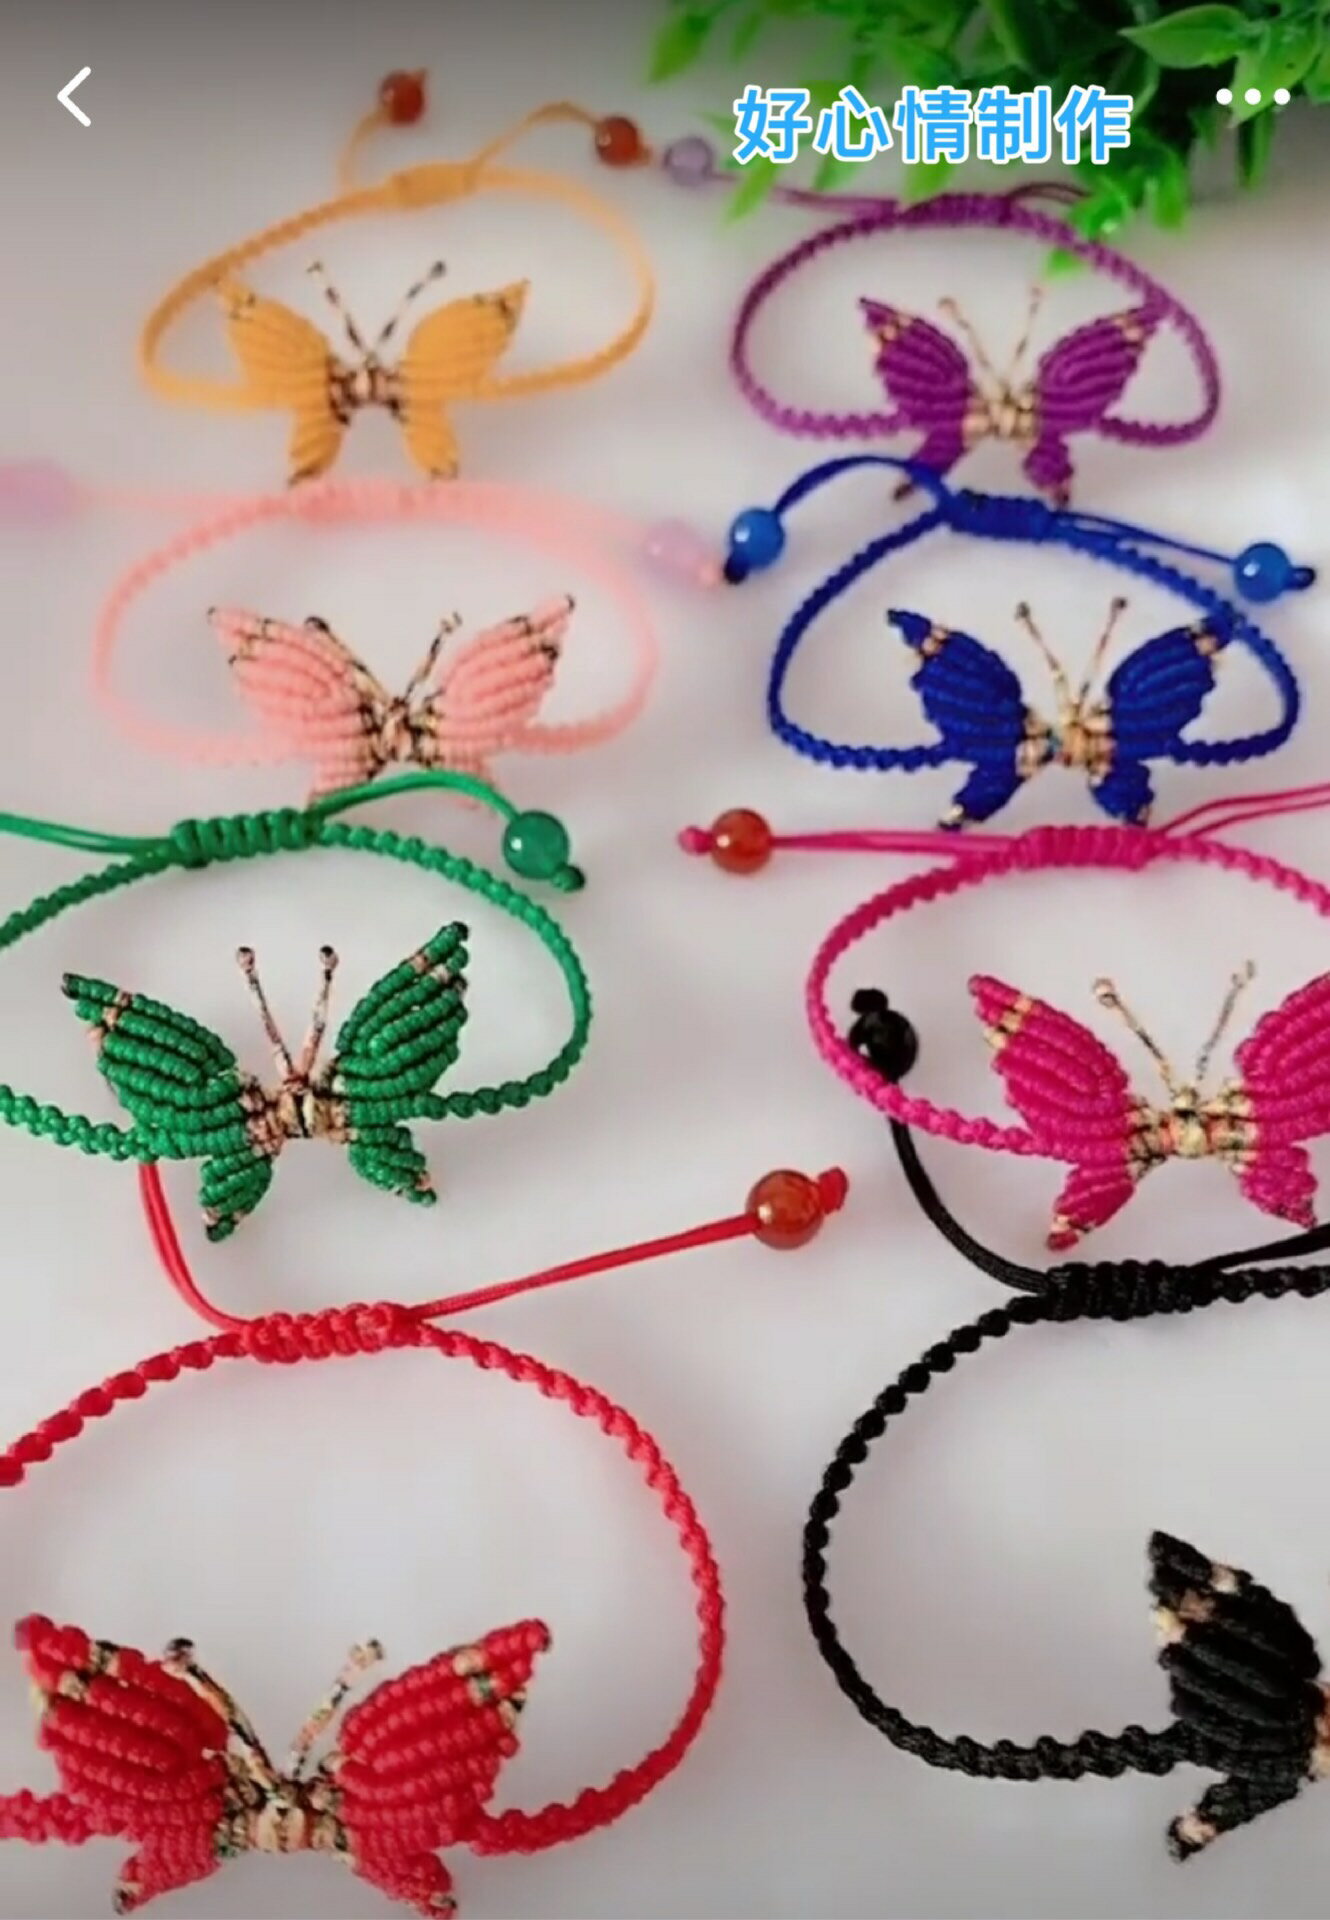 好心情手工編織中國結DIY蝴蝶手腳鏈創意飾品禮品 成品材料包